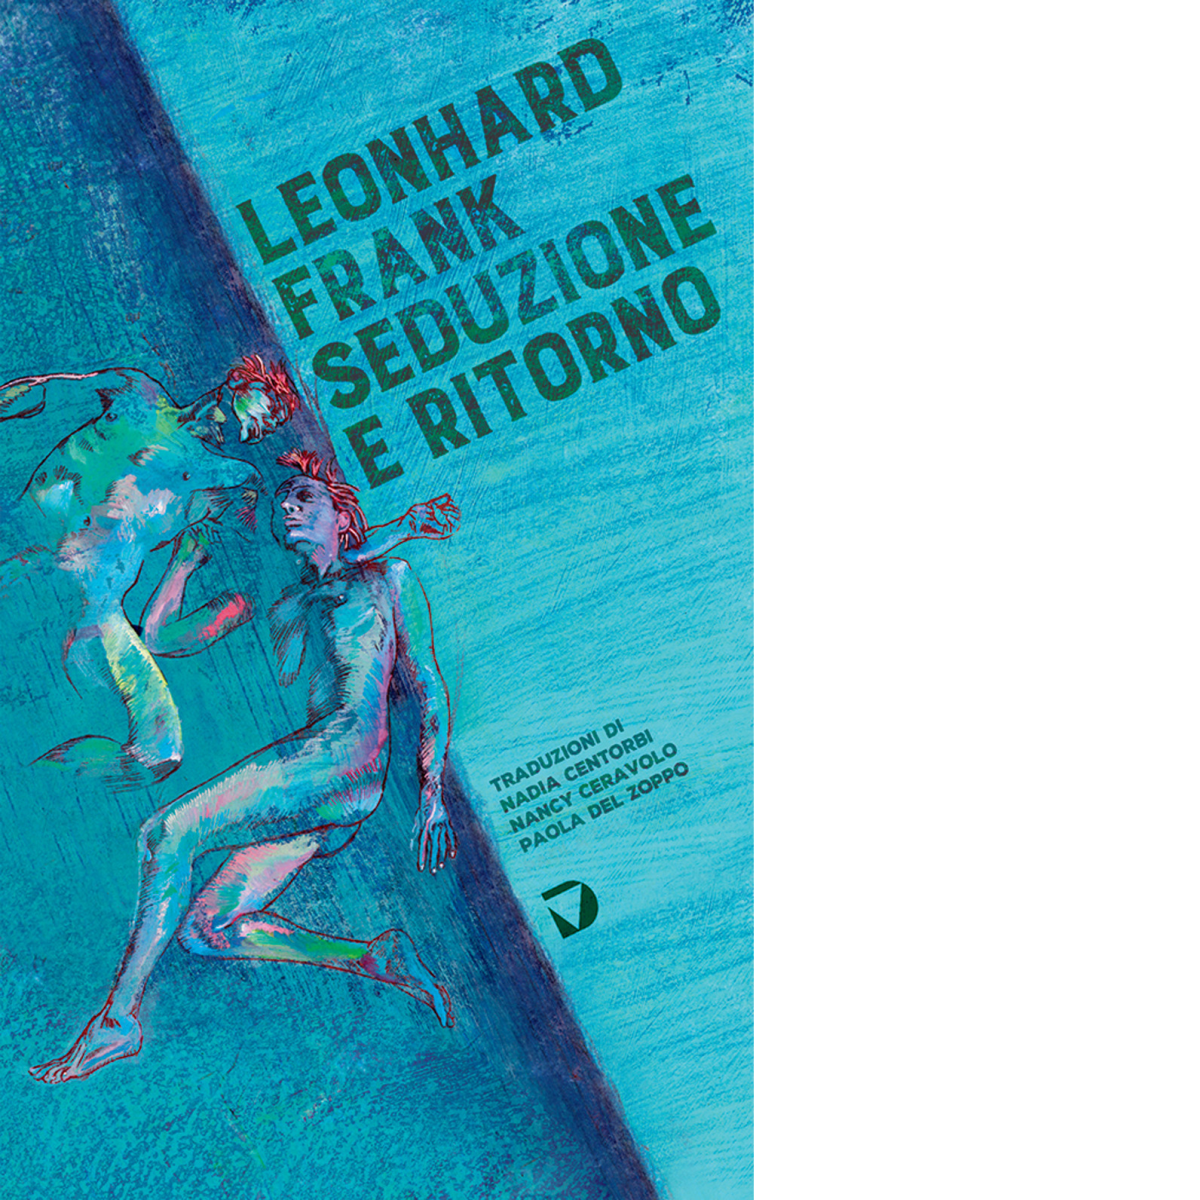 Seduzione e ritorno di Leonhard Frank - Del Vecchio editore, 2022